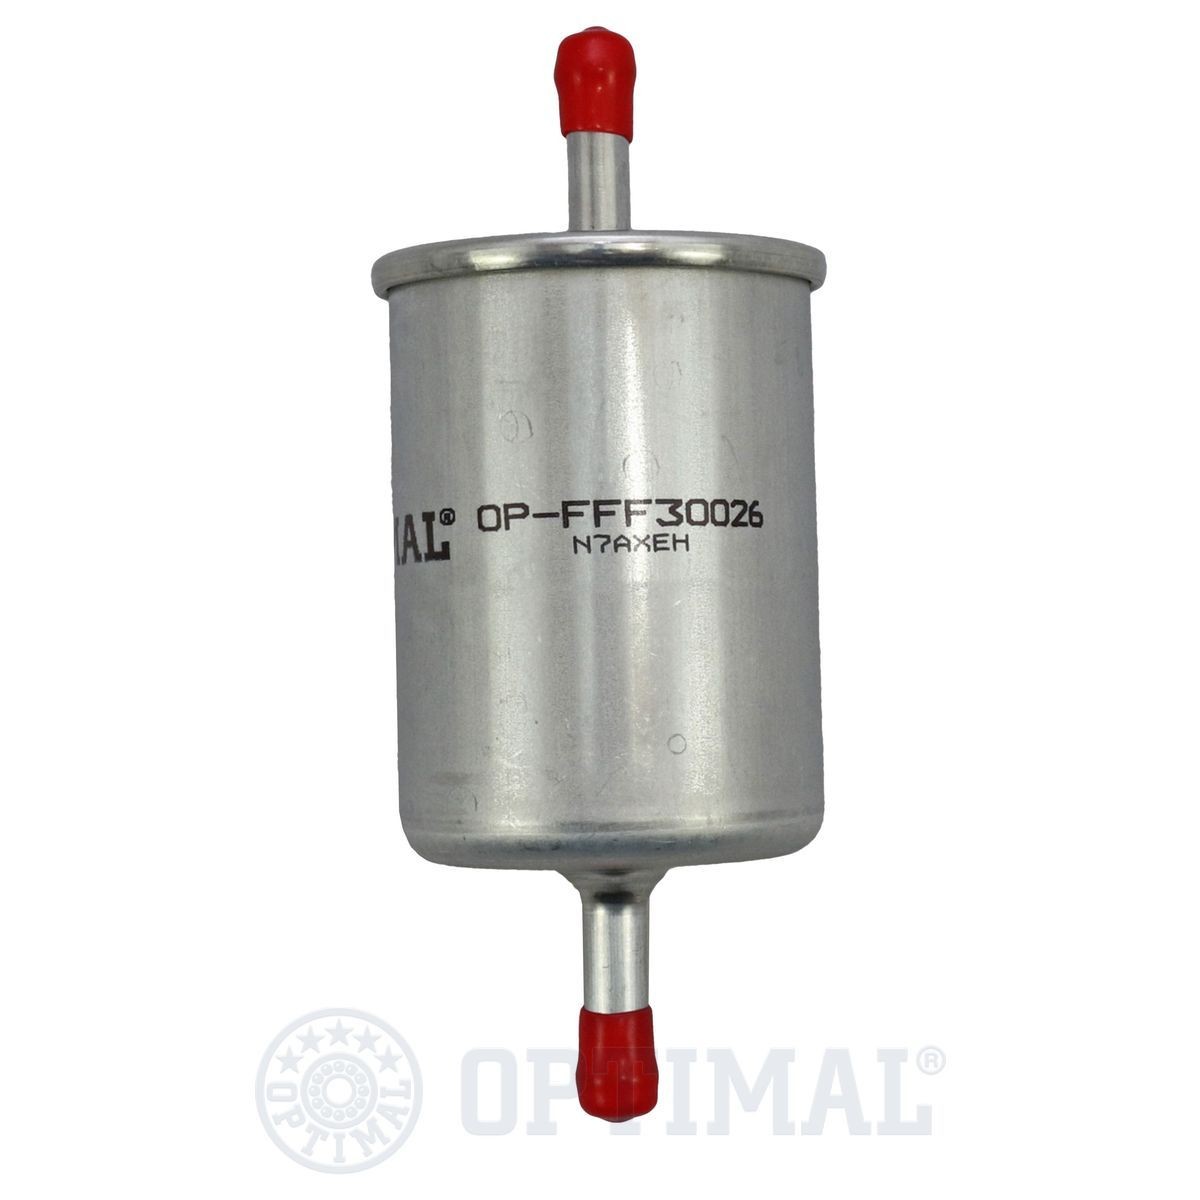 OPTIMAL OP-FFF30026 Fuel filter 1492441